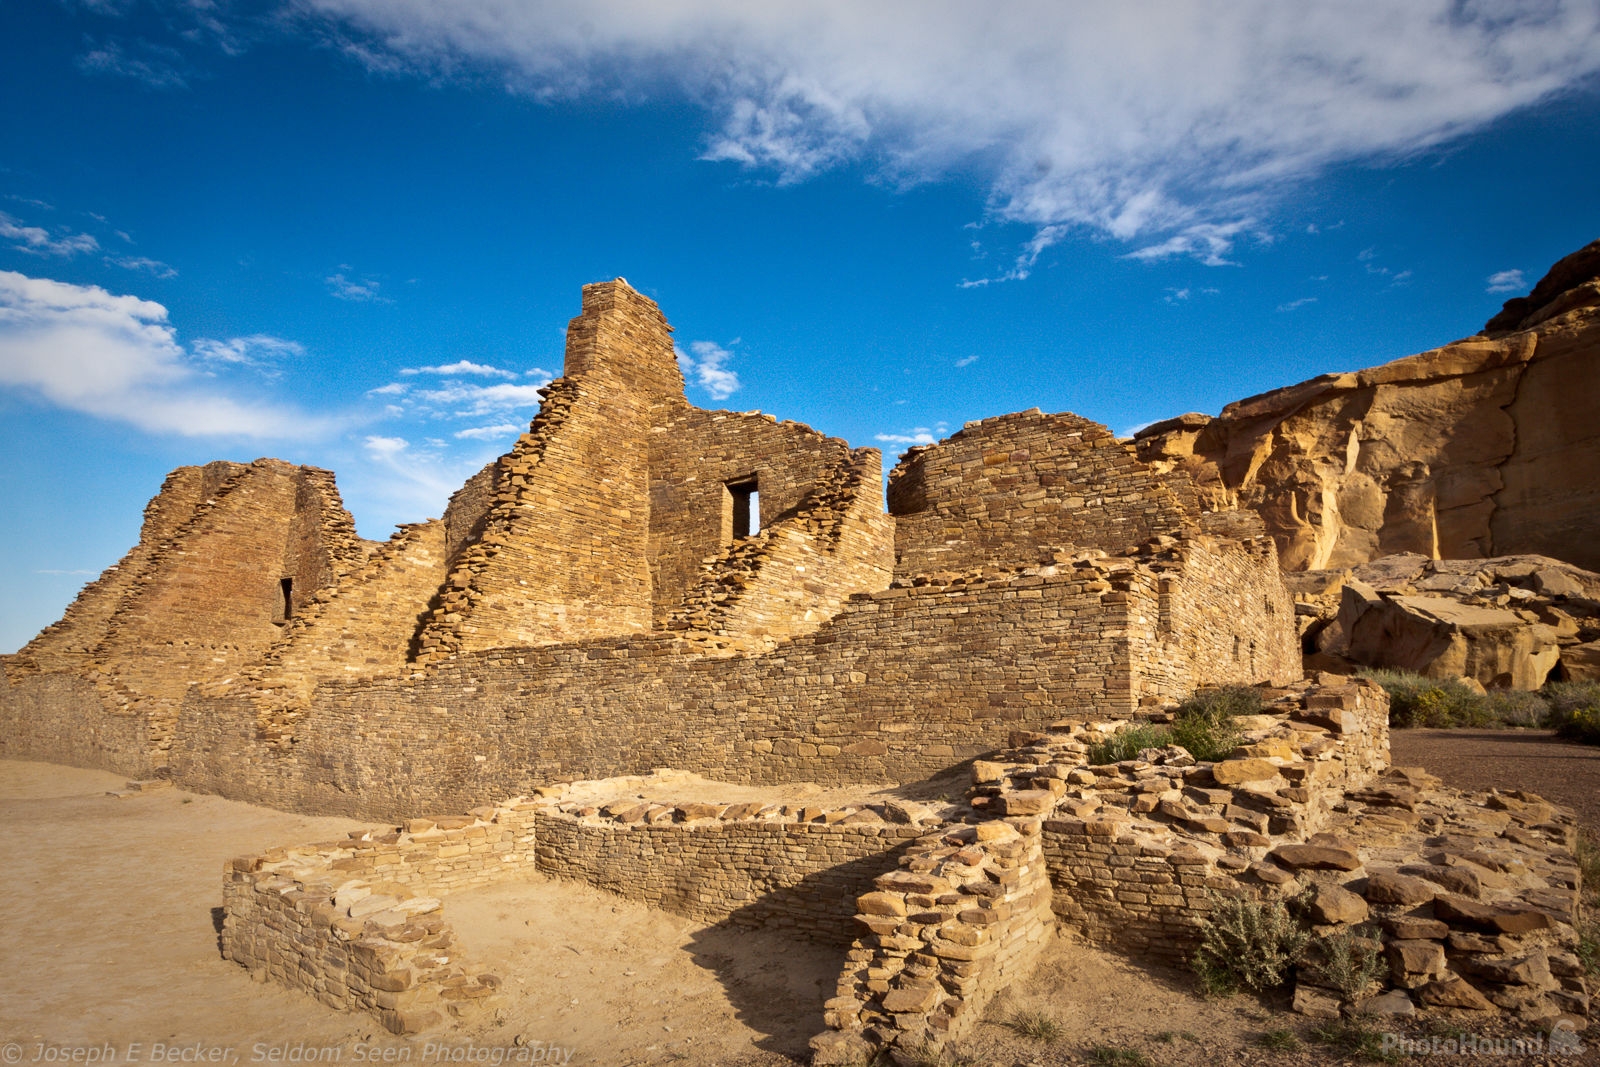 Image of Pueblo Bonito by Joe Becker